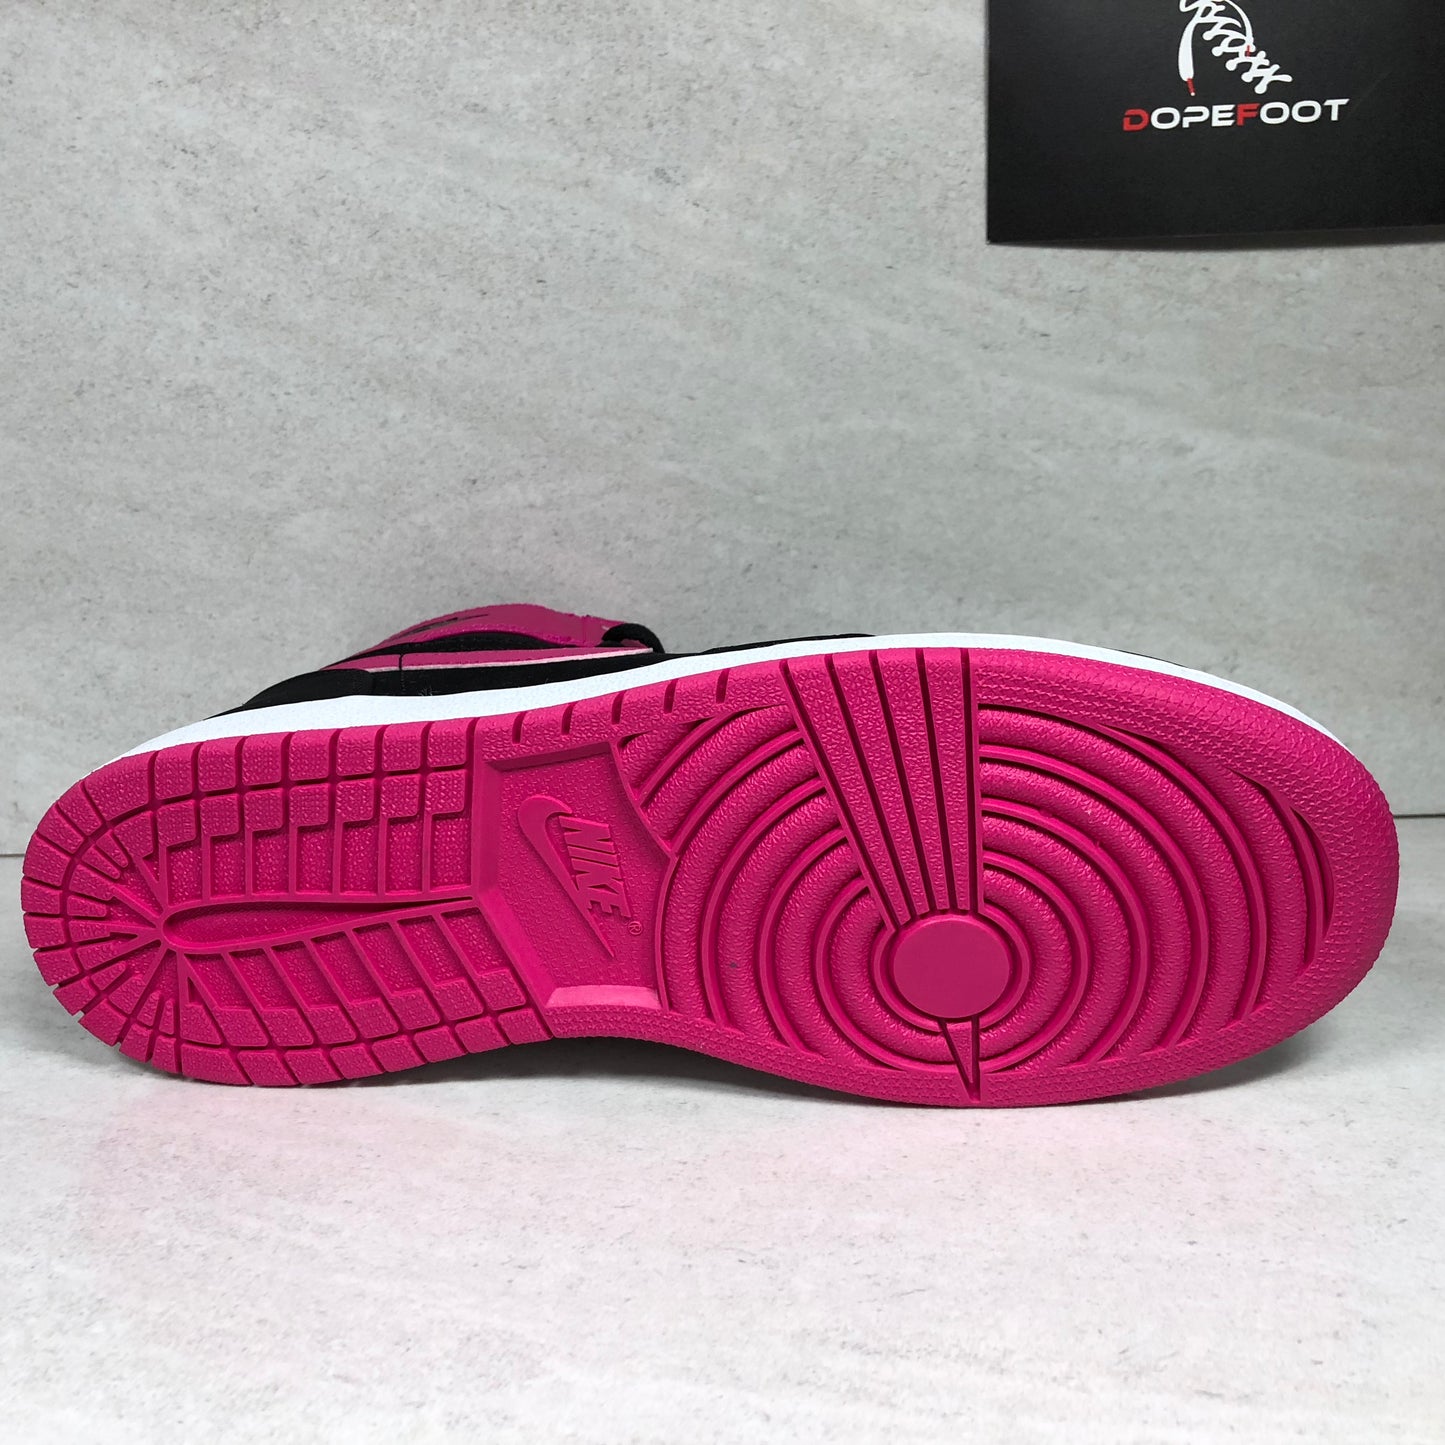 DS Nike Air Jordan 1 Retro High GG Tamaño 8Y/8.5Y Negro/Rosa vivo 332148 008